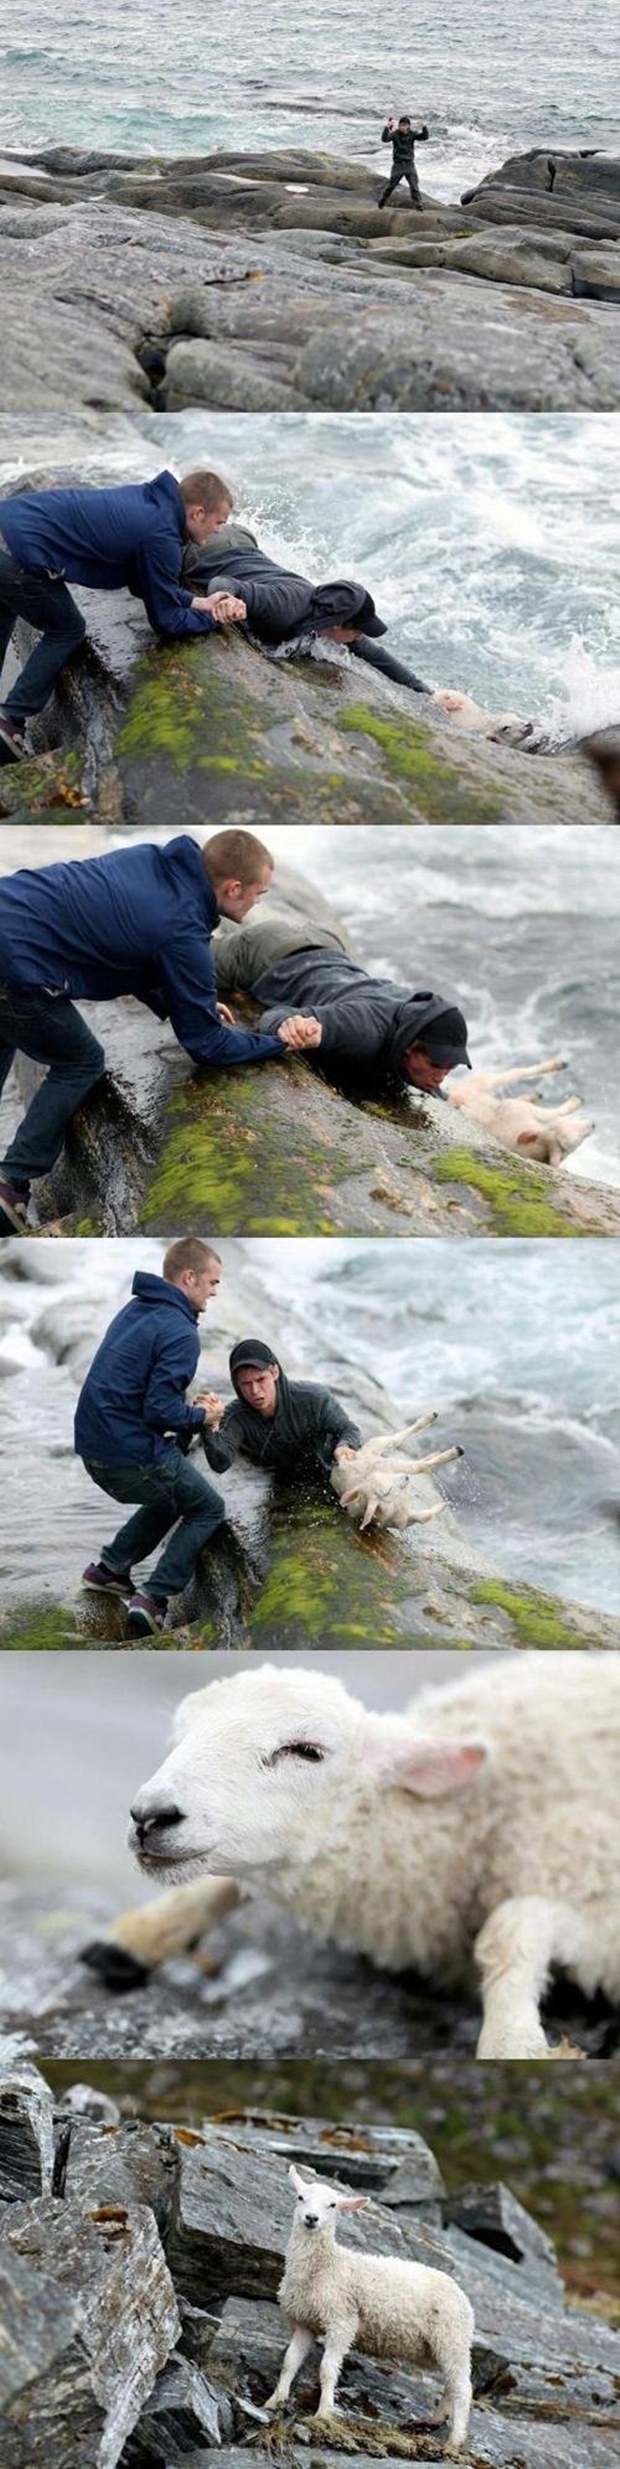 Rapazes resgatam ovelha do mar (Foto: Reprodução)